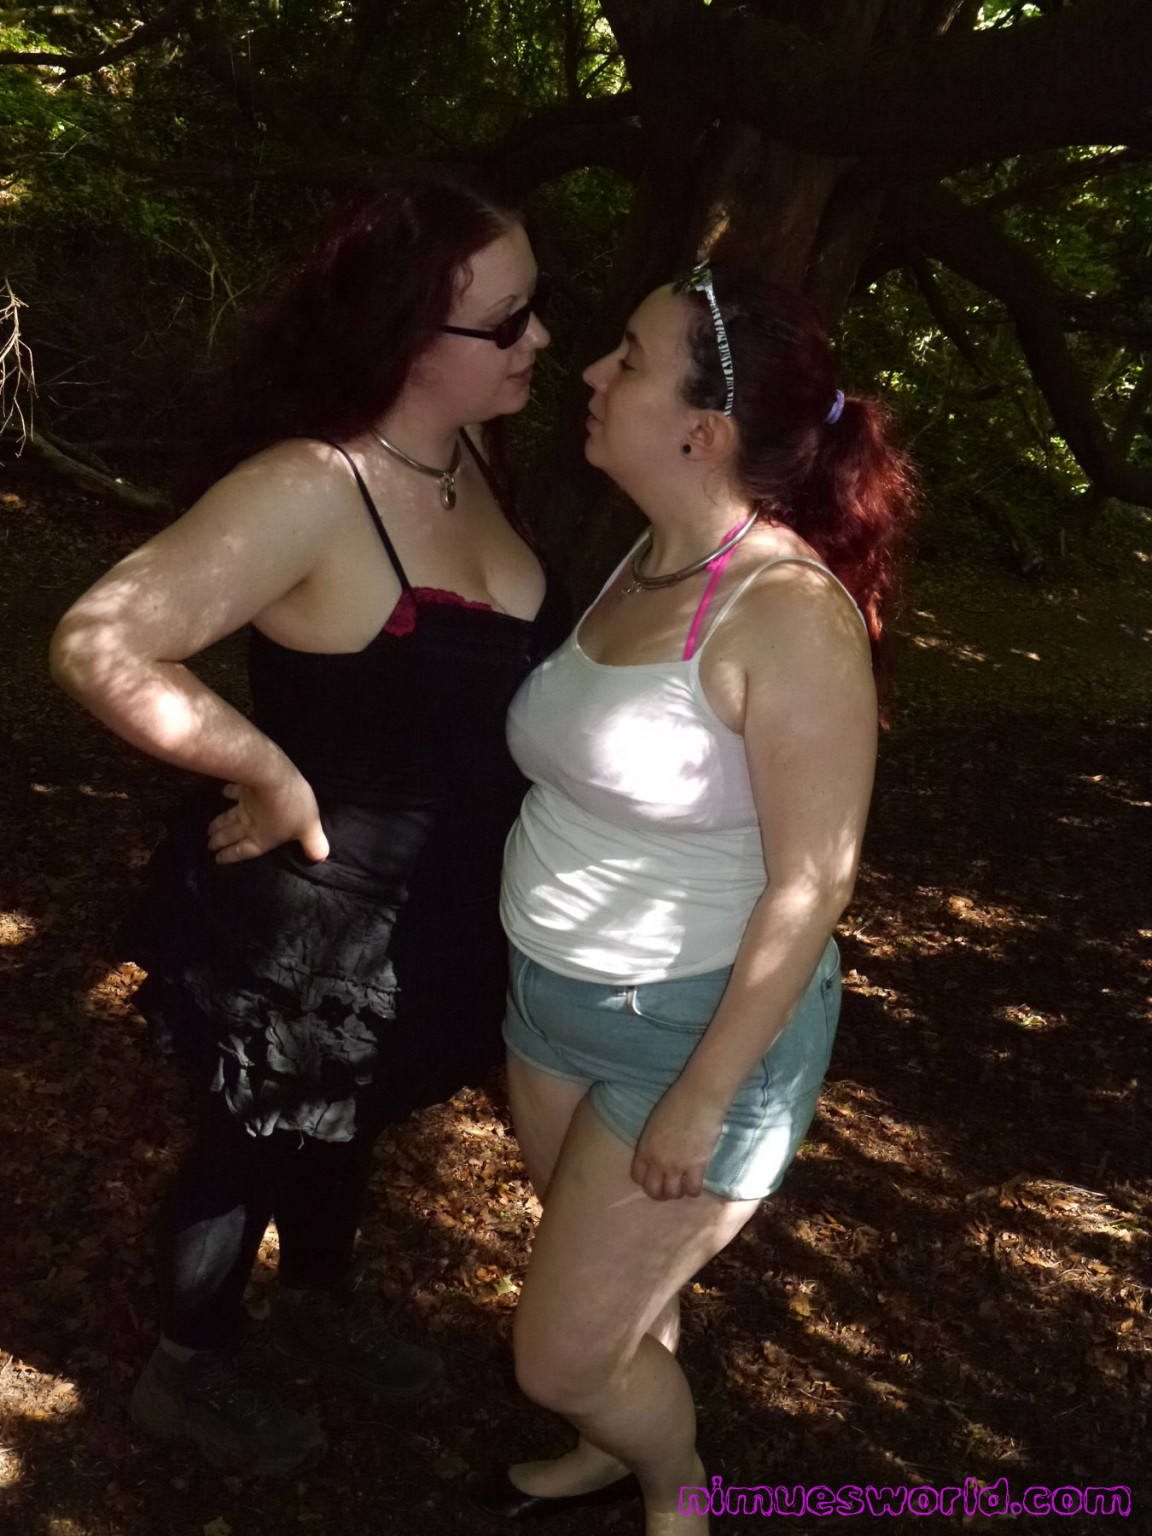 Lesbianas británicas rosie y nimue al aire libre haciendo el amor y follando
 #74638434